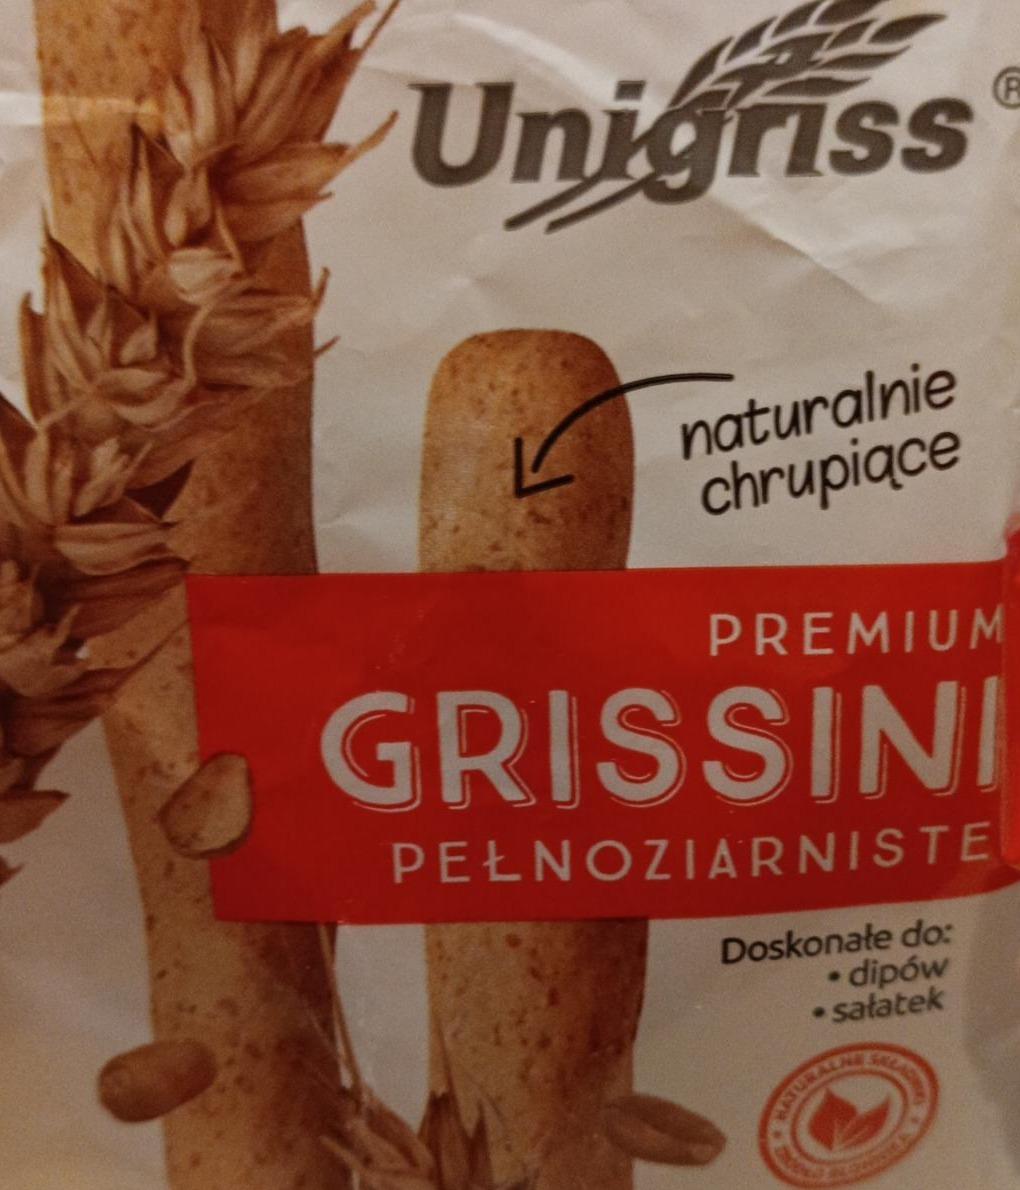 Fotografie - Premium Grissini pełnoziarniste Unigriss